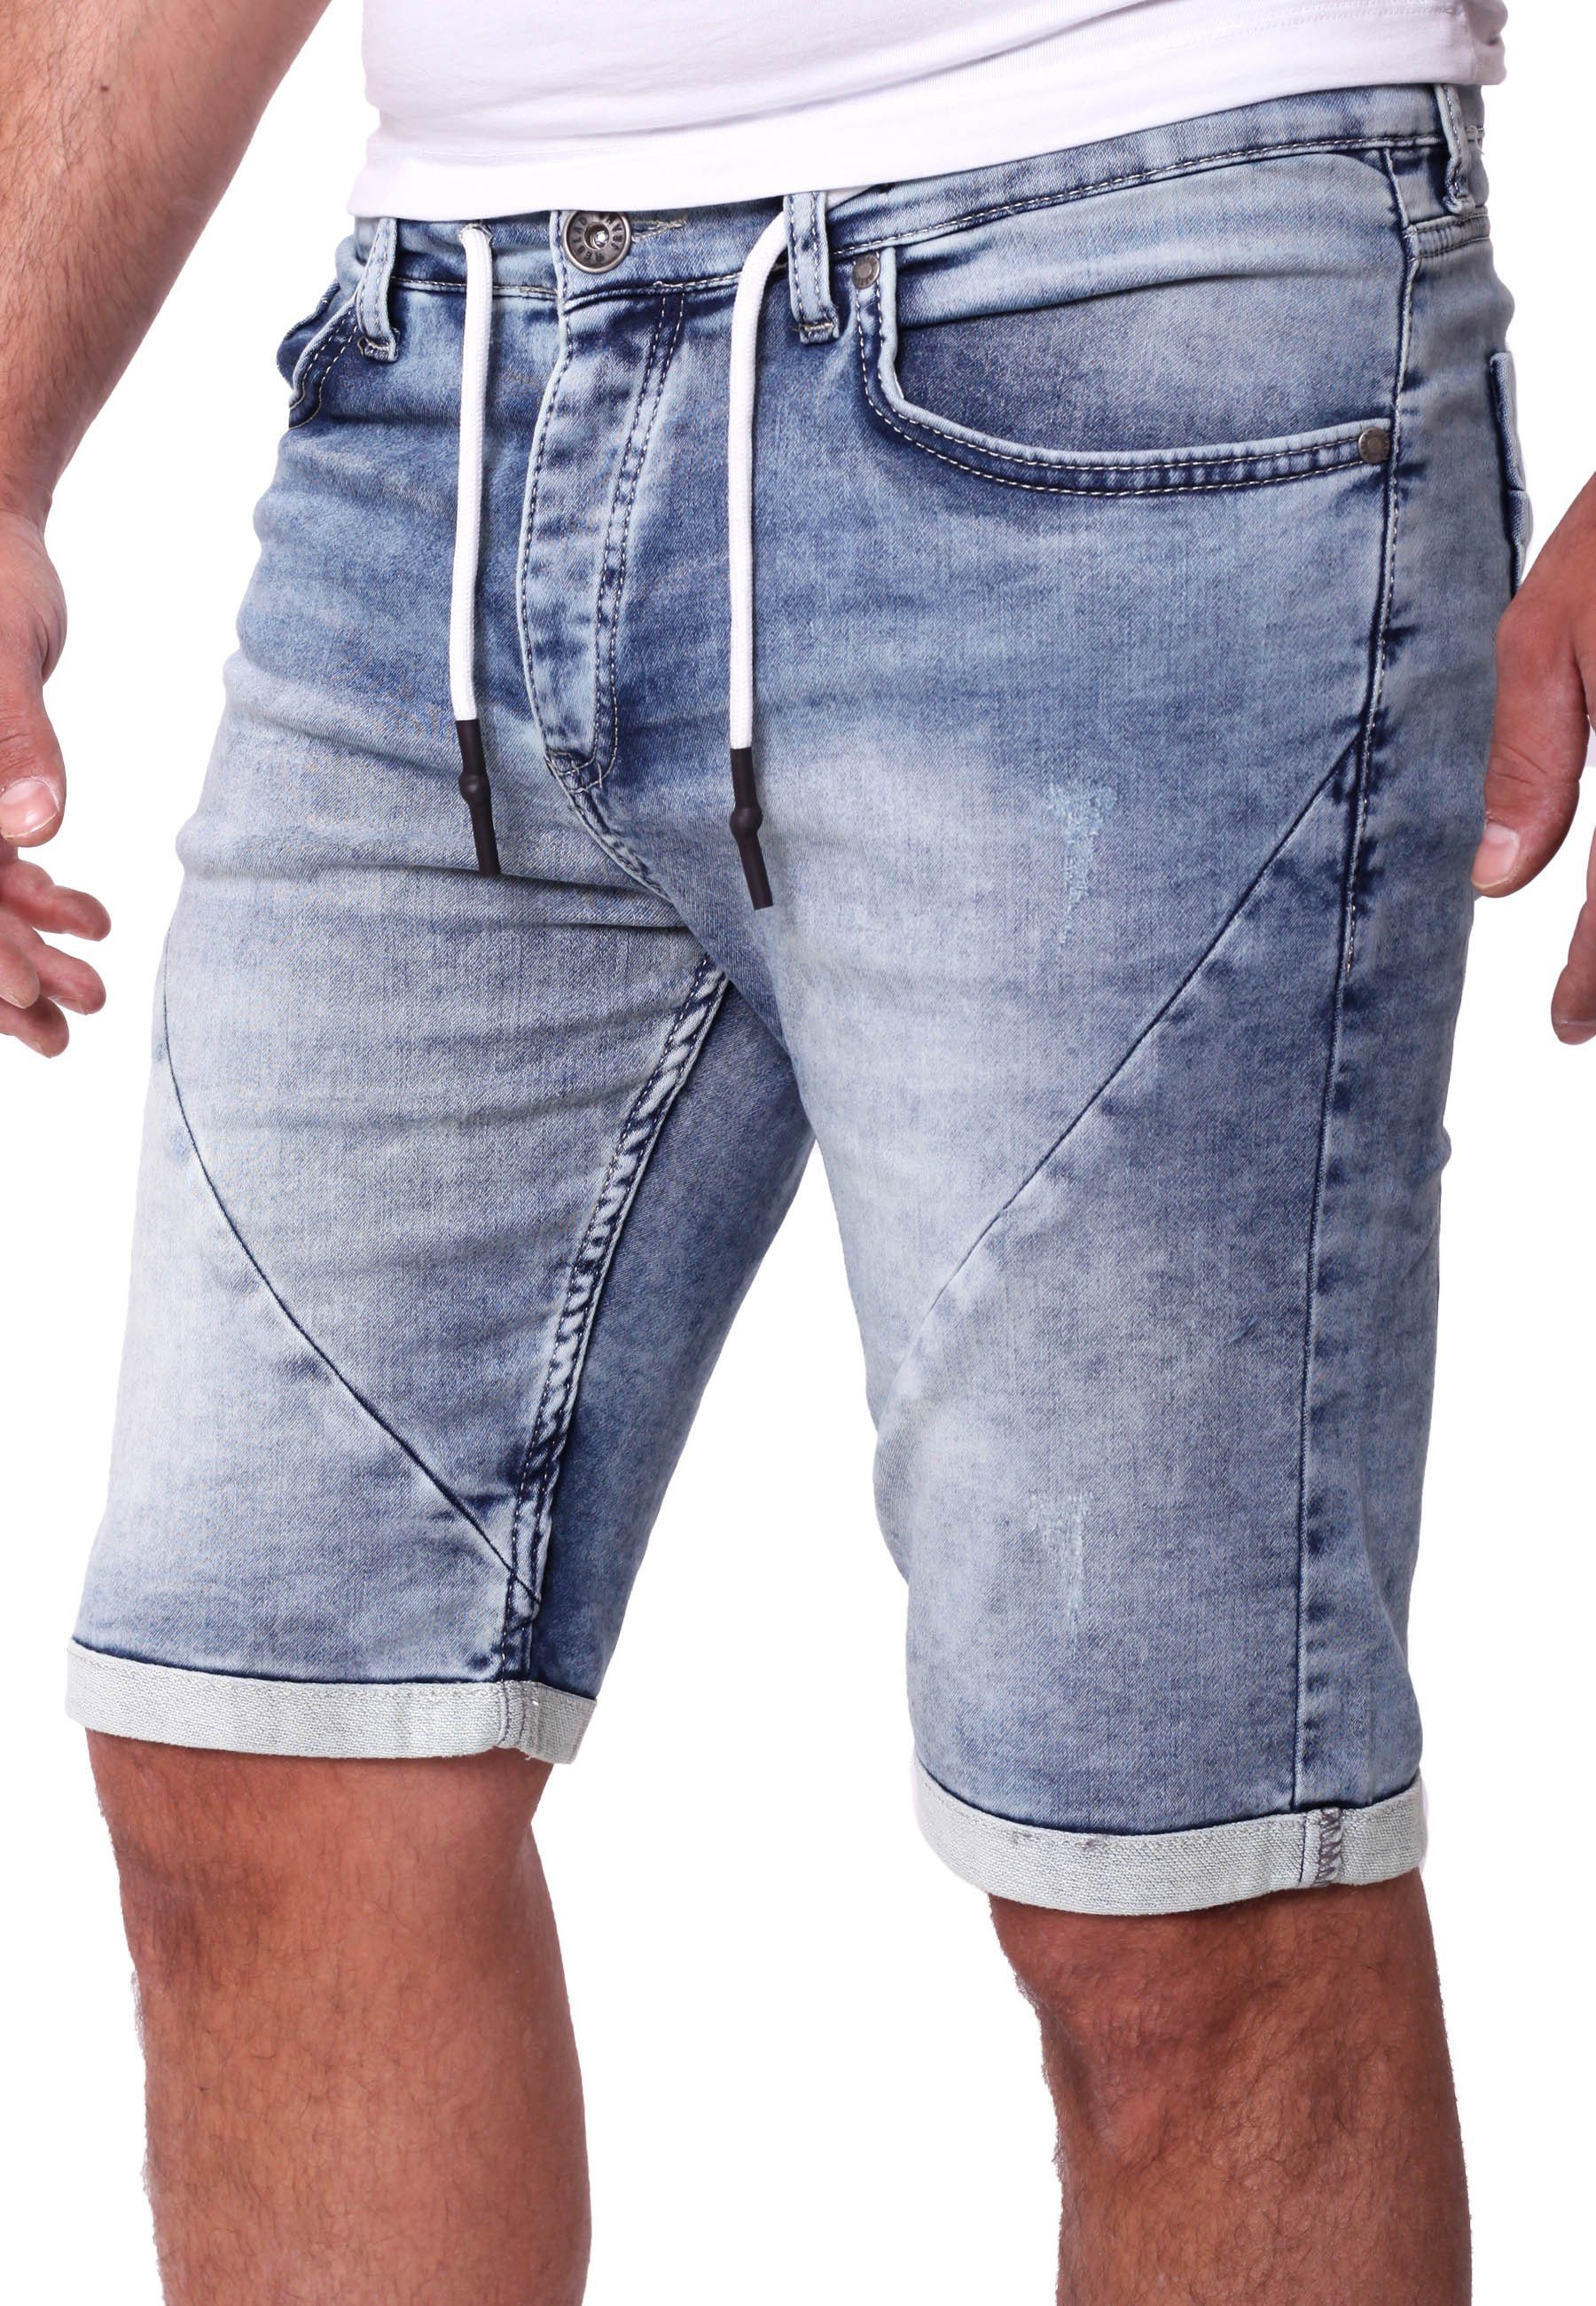 Reslad Jeansshorts Reslad Jeans Shorts Herren Kurze Hosen Sommer - Sweathose in Jeansopti Jeans-Shorts Sweatjeans Jeansbermudas Stretch Jeans-Hose hellblau